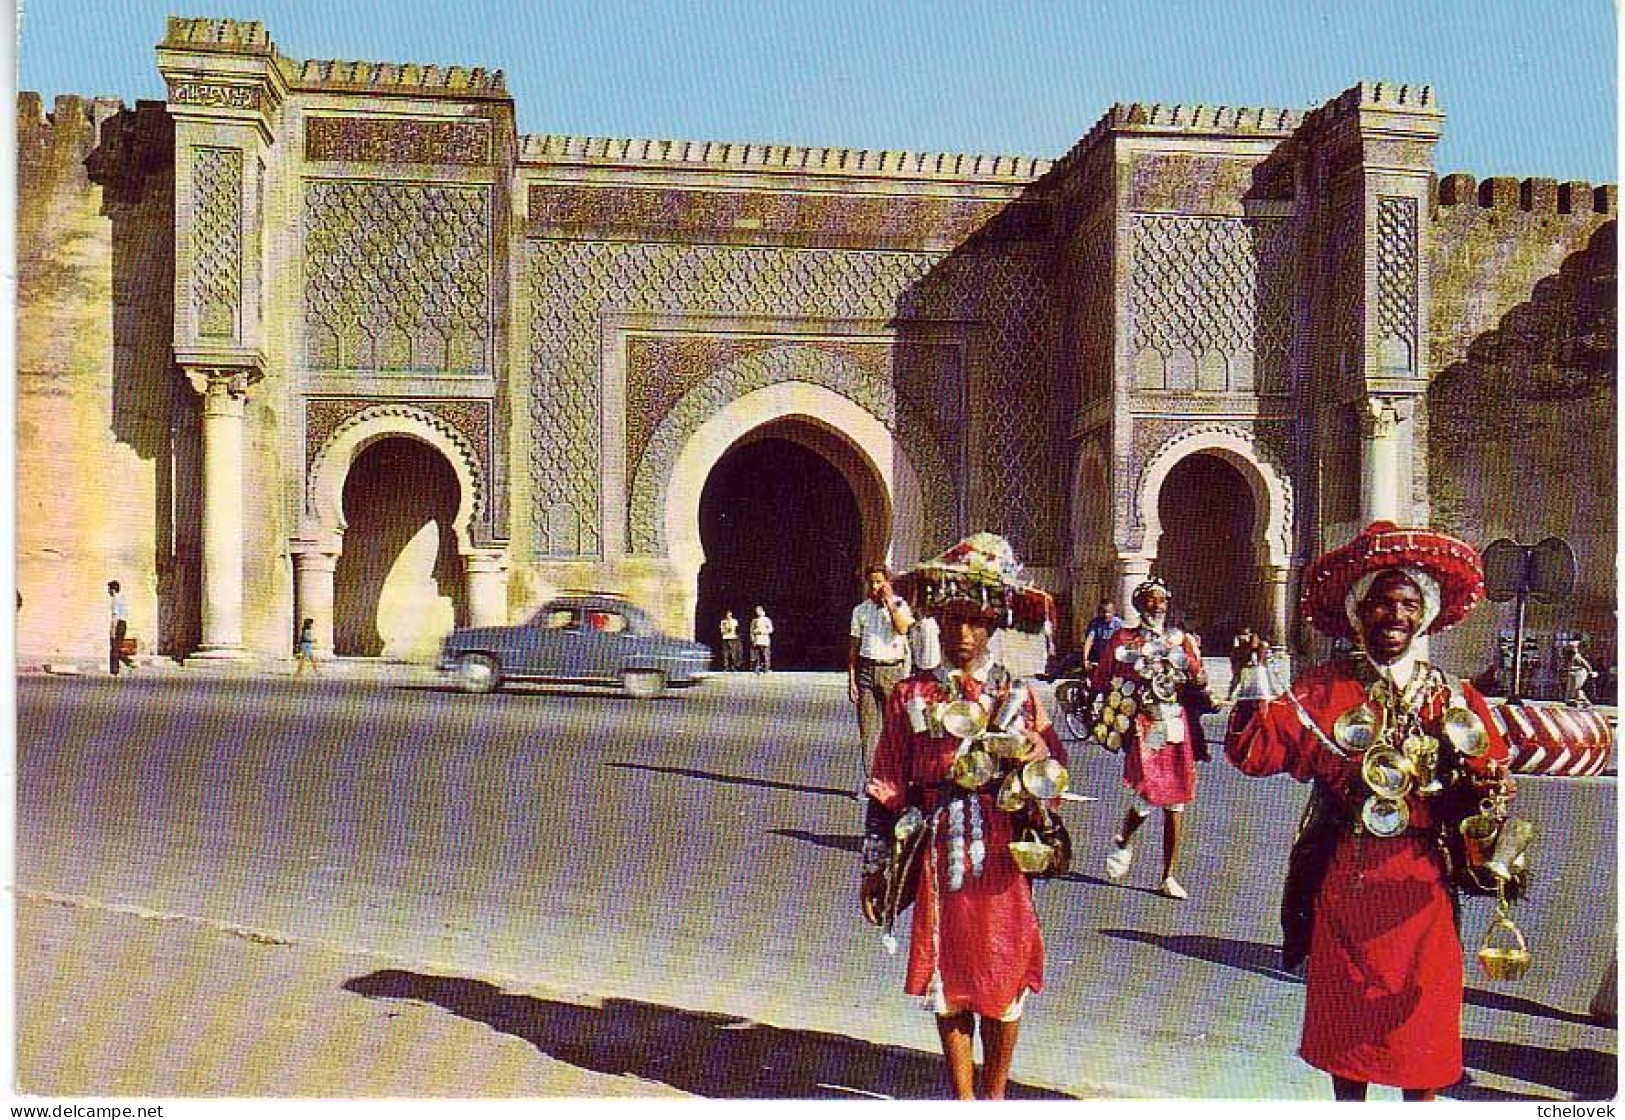 (99). Maroc. Morroco. Meknes Bab El Manssour vendeur d'eau & BR 384 & 715 & 7720 Sud & 169 Chevaux